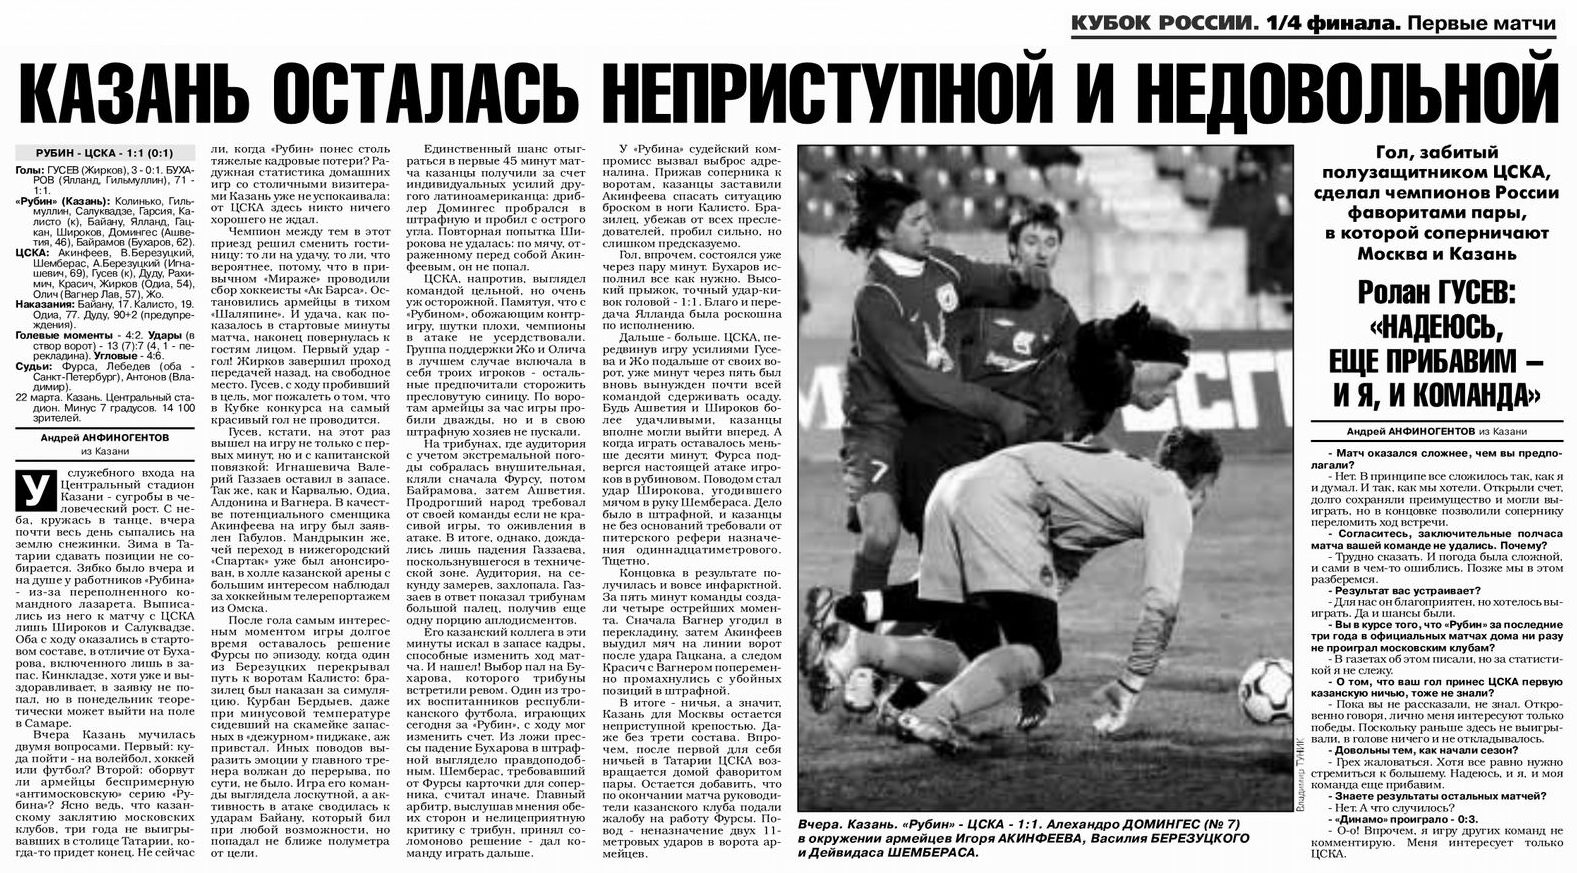 2006-03-22.Rubin-CSKA.1